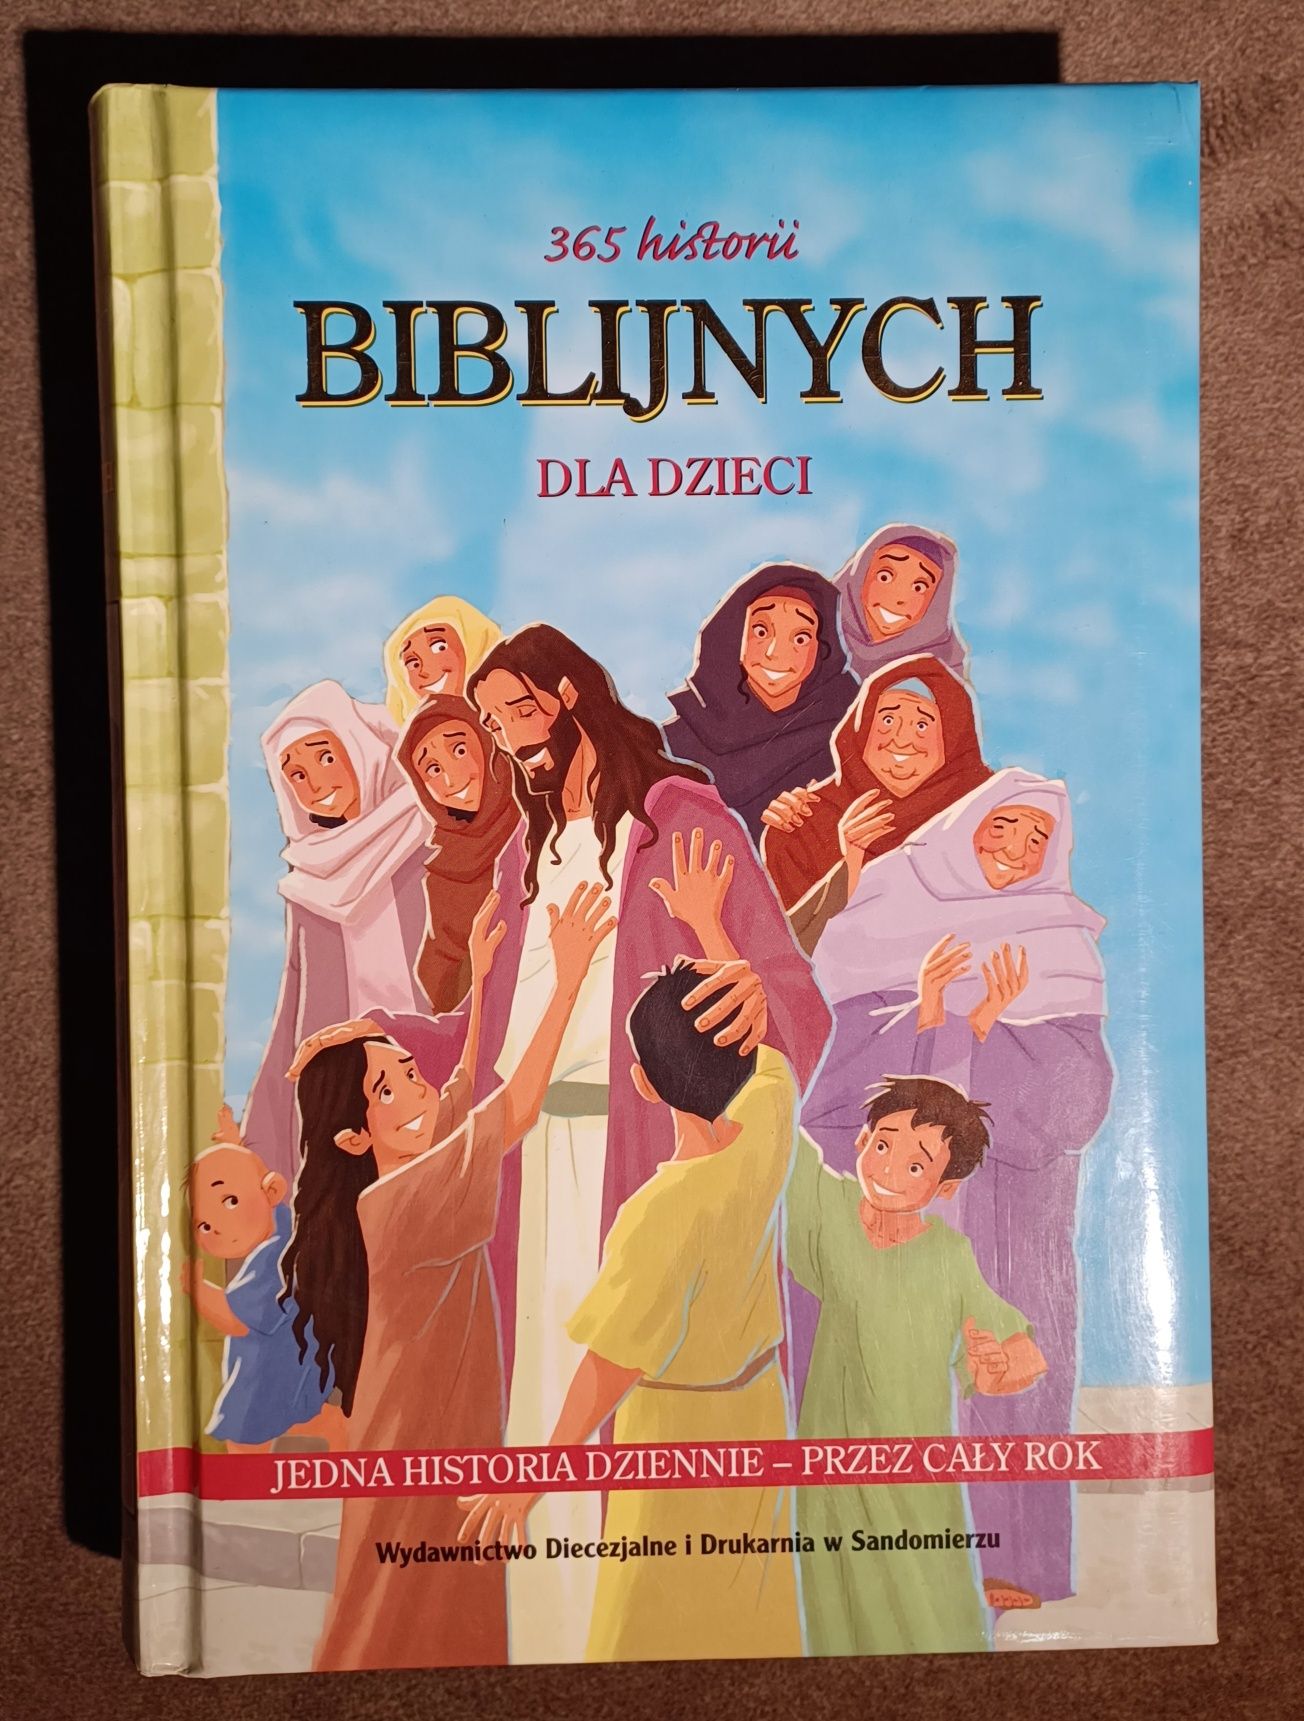 "365 historii biblijnych dla dzieci"